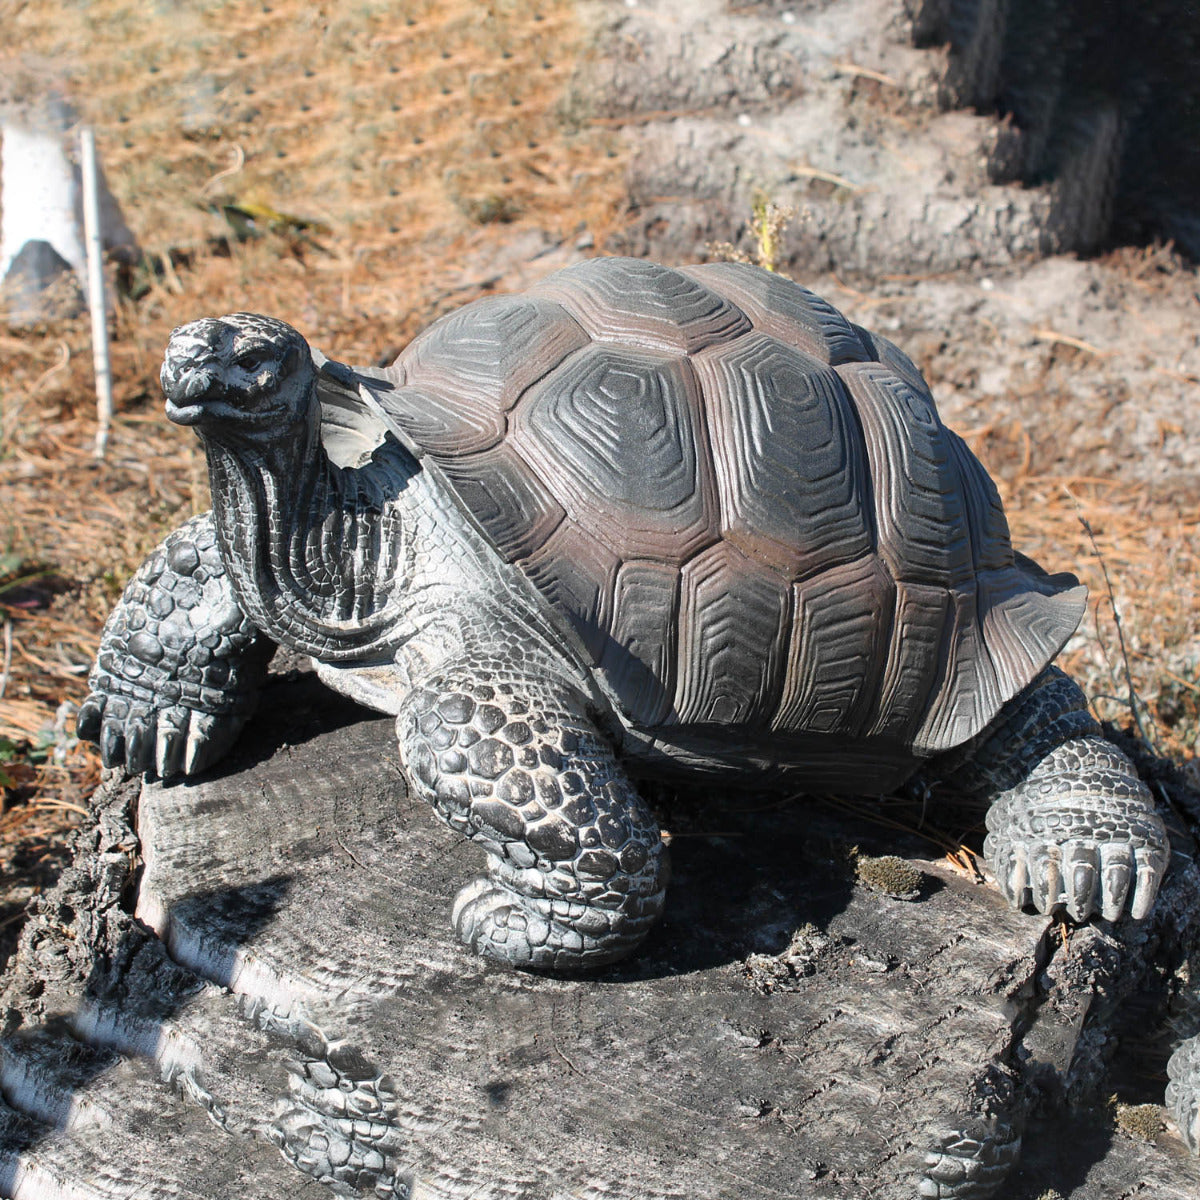 Schildkröte Tierfigur Sammy Gartenfigur Teich Dekoration Reptilien